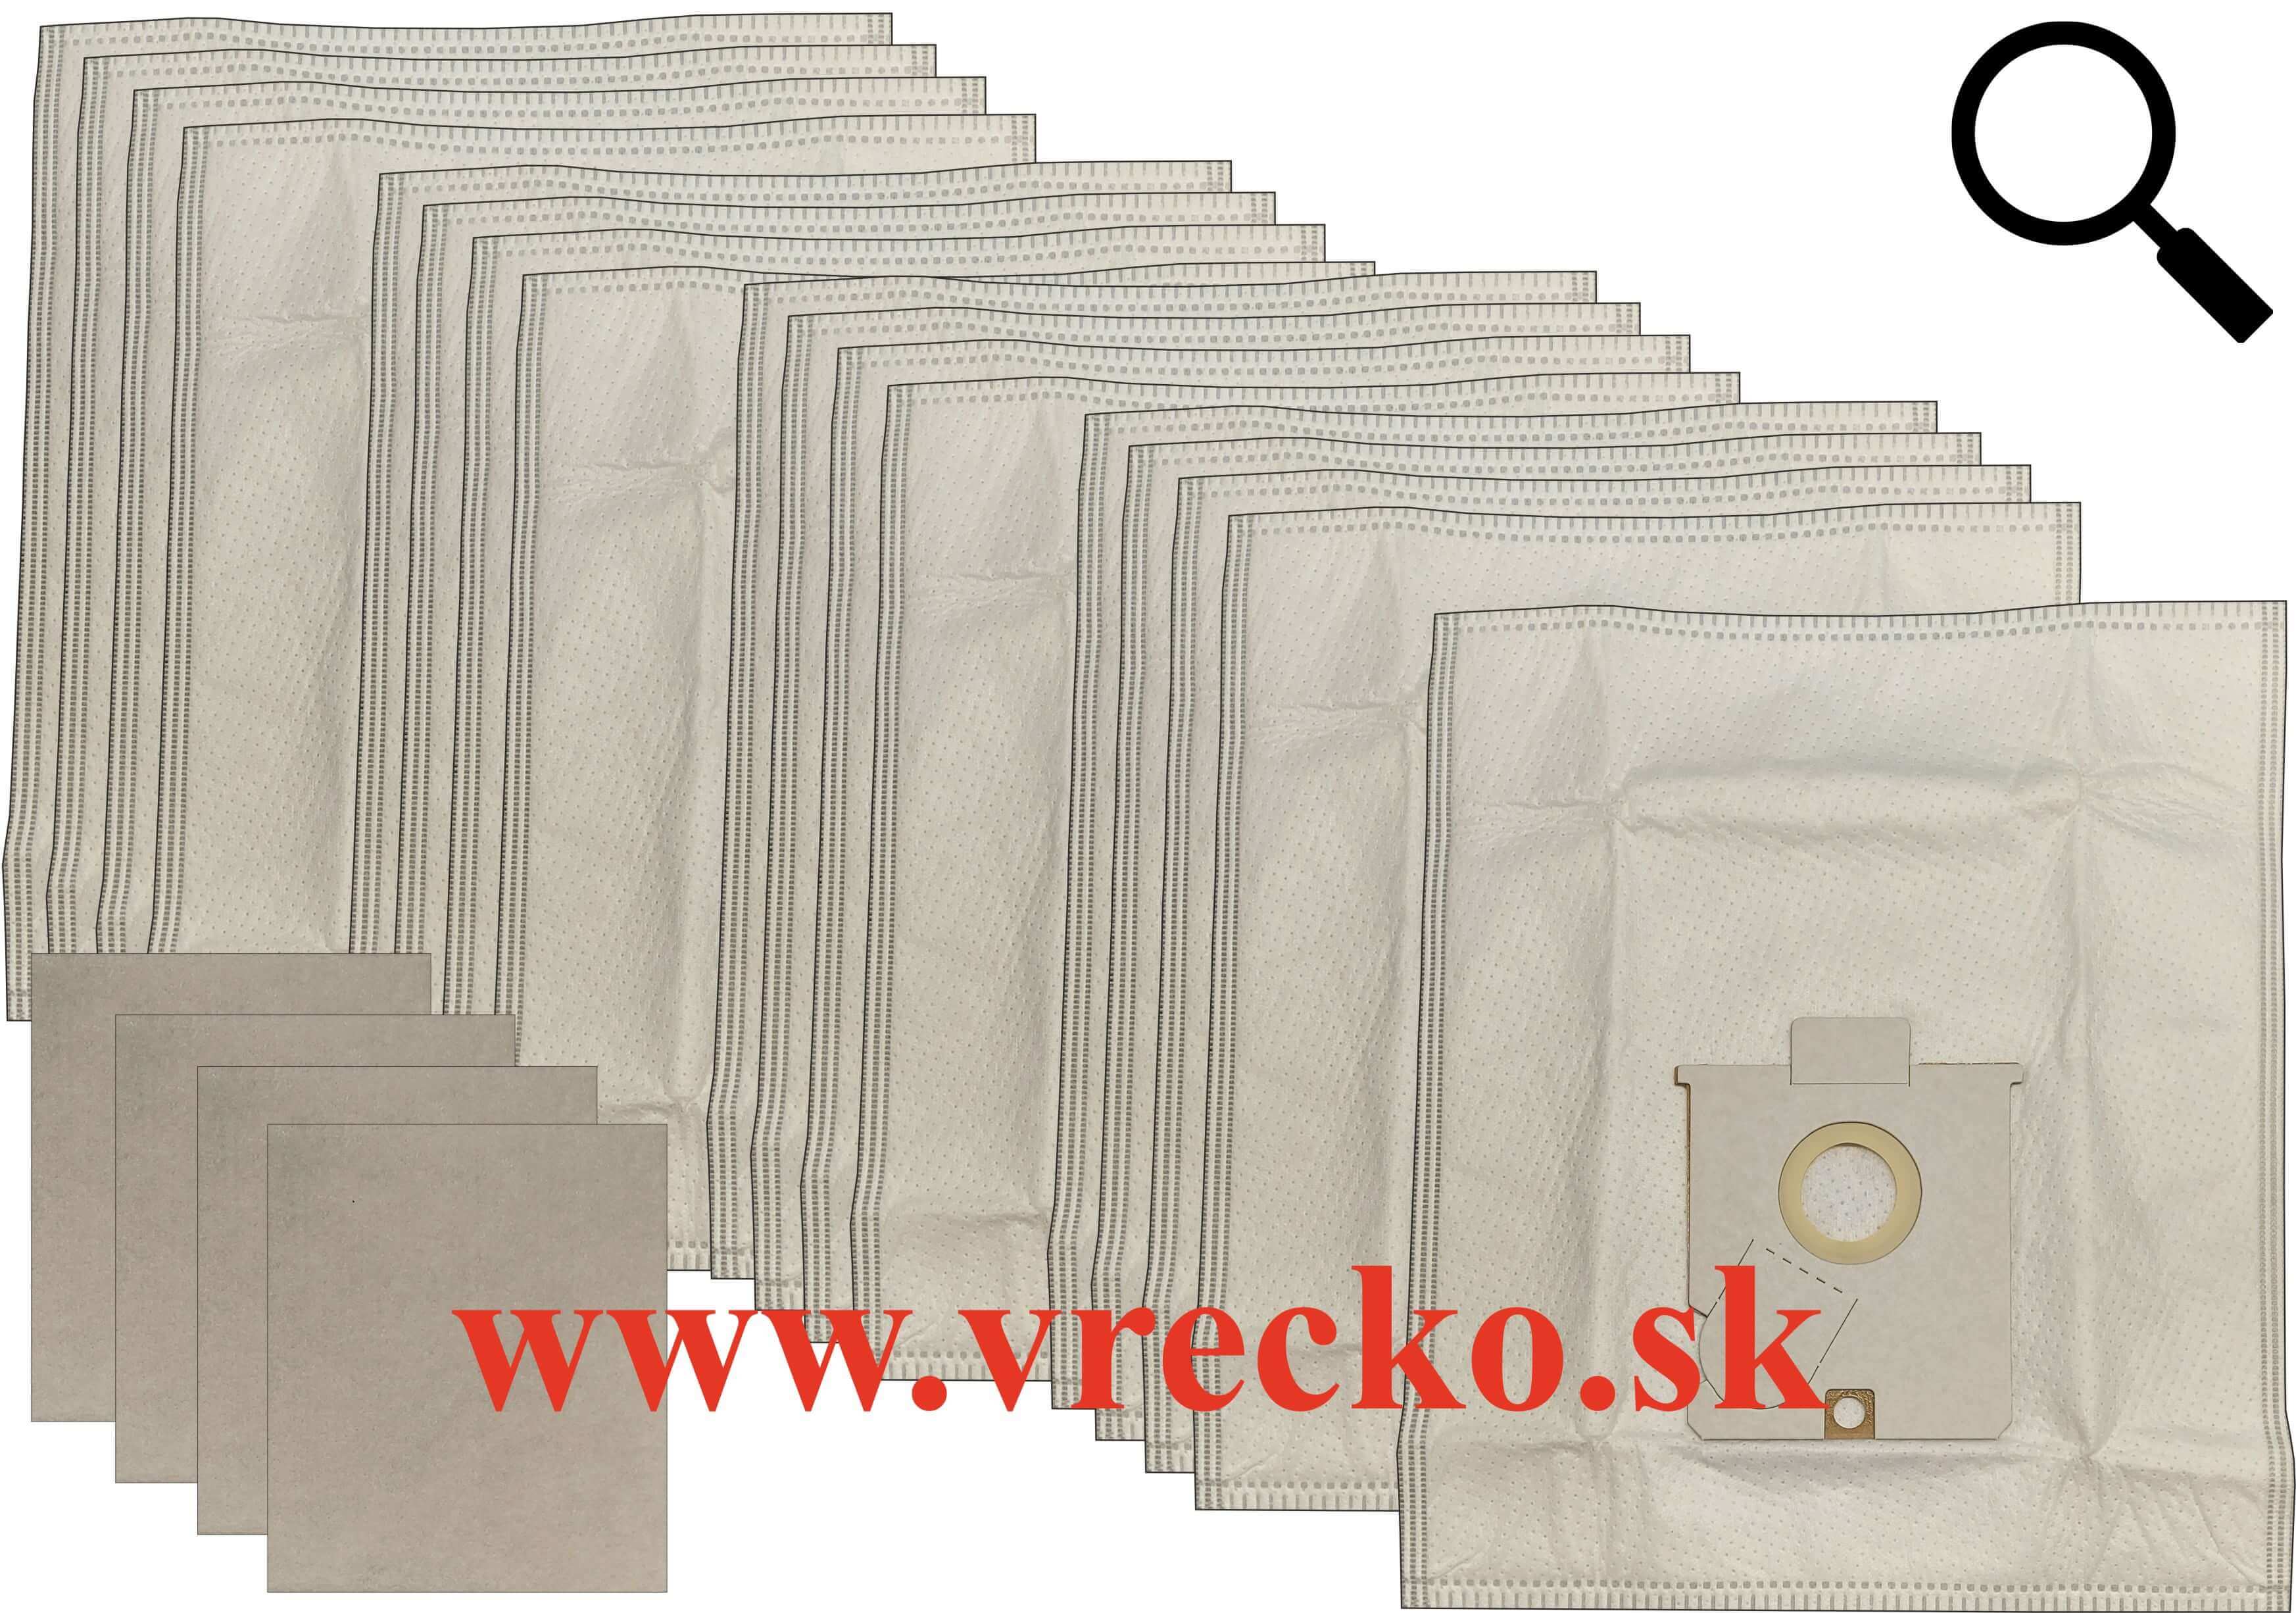 Aeg Vampyr SL - Textilné vrecká do vysávača XXL vo zvýhodnenom balení s dopravou zdarma (17ks)